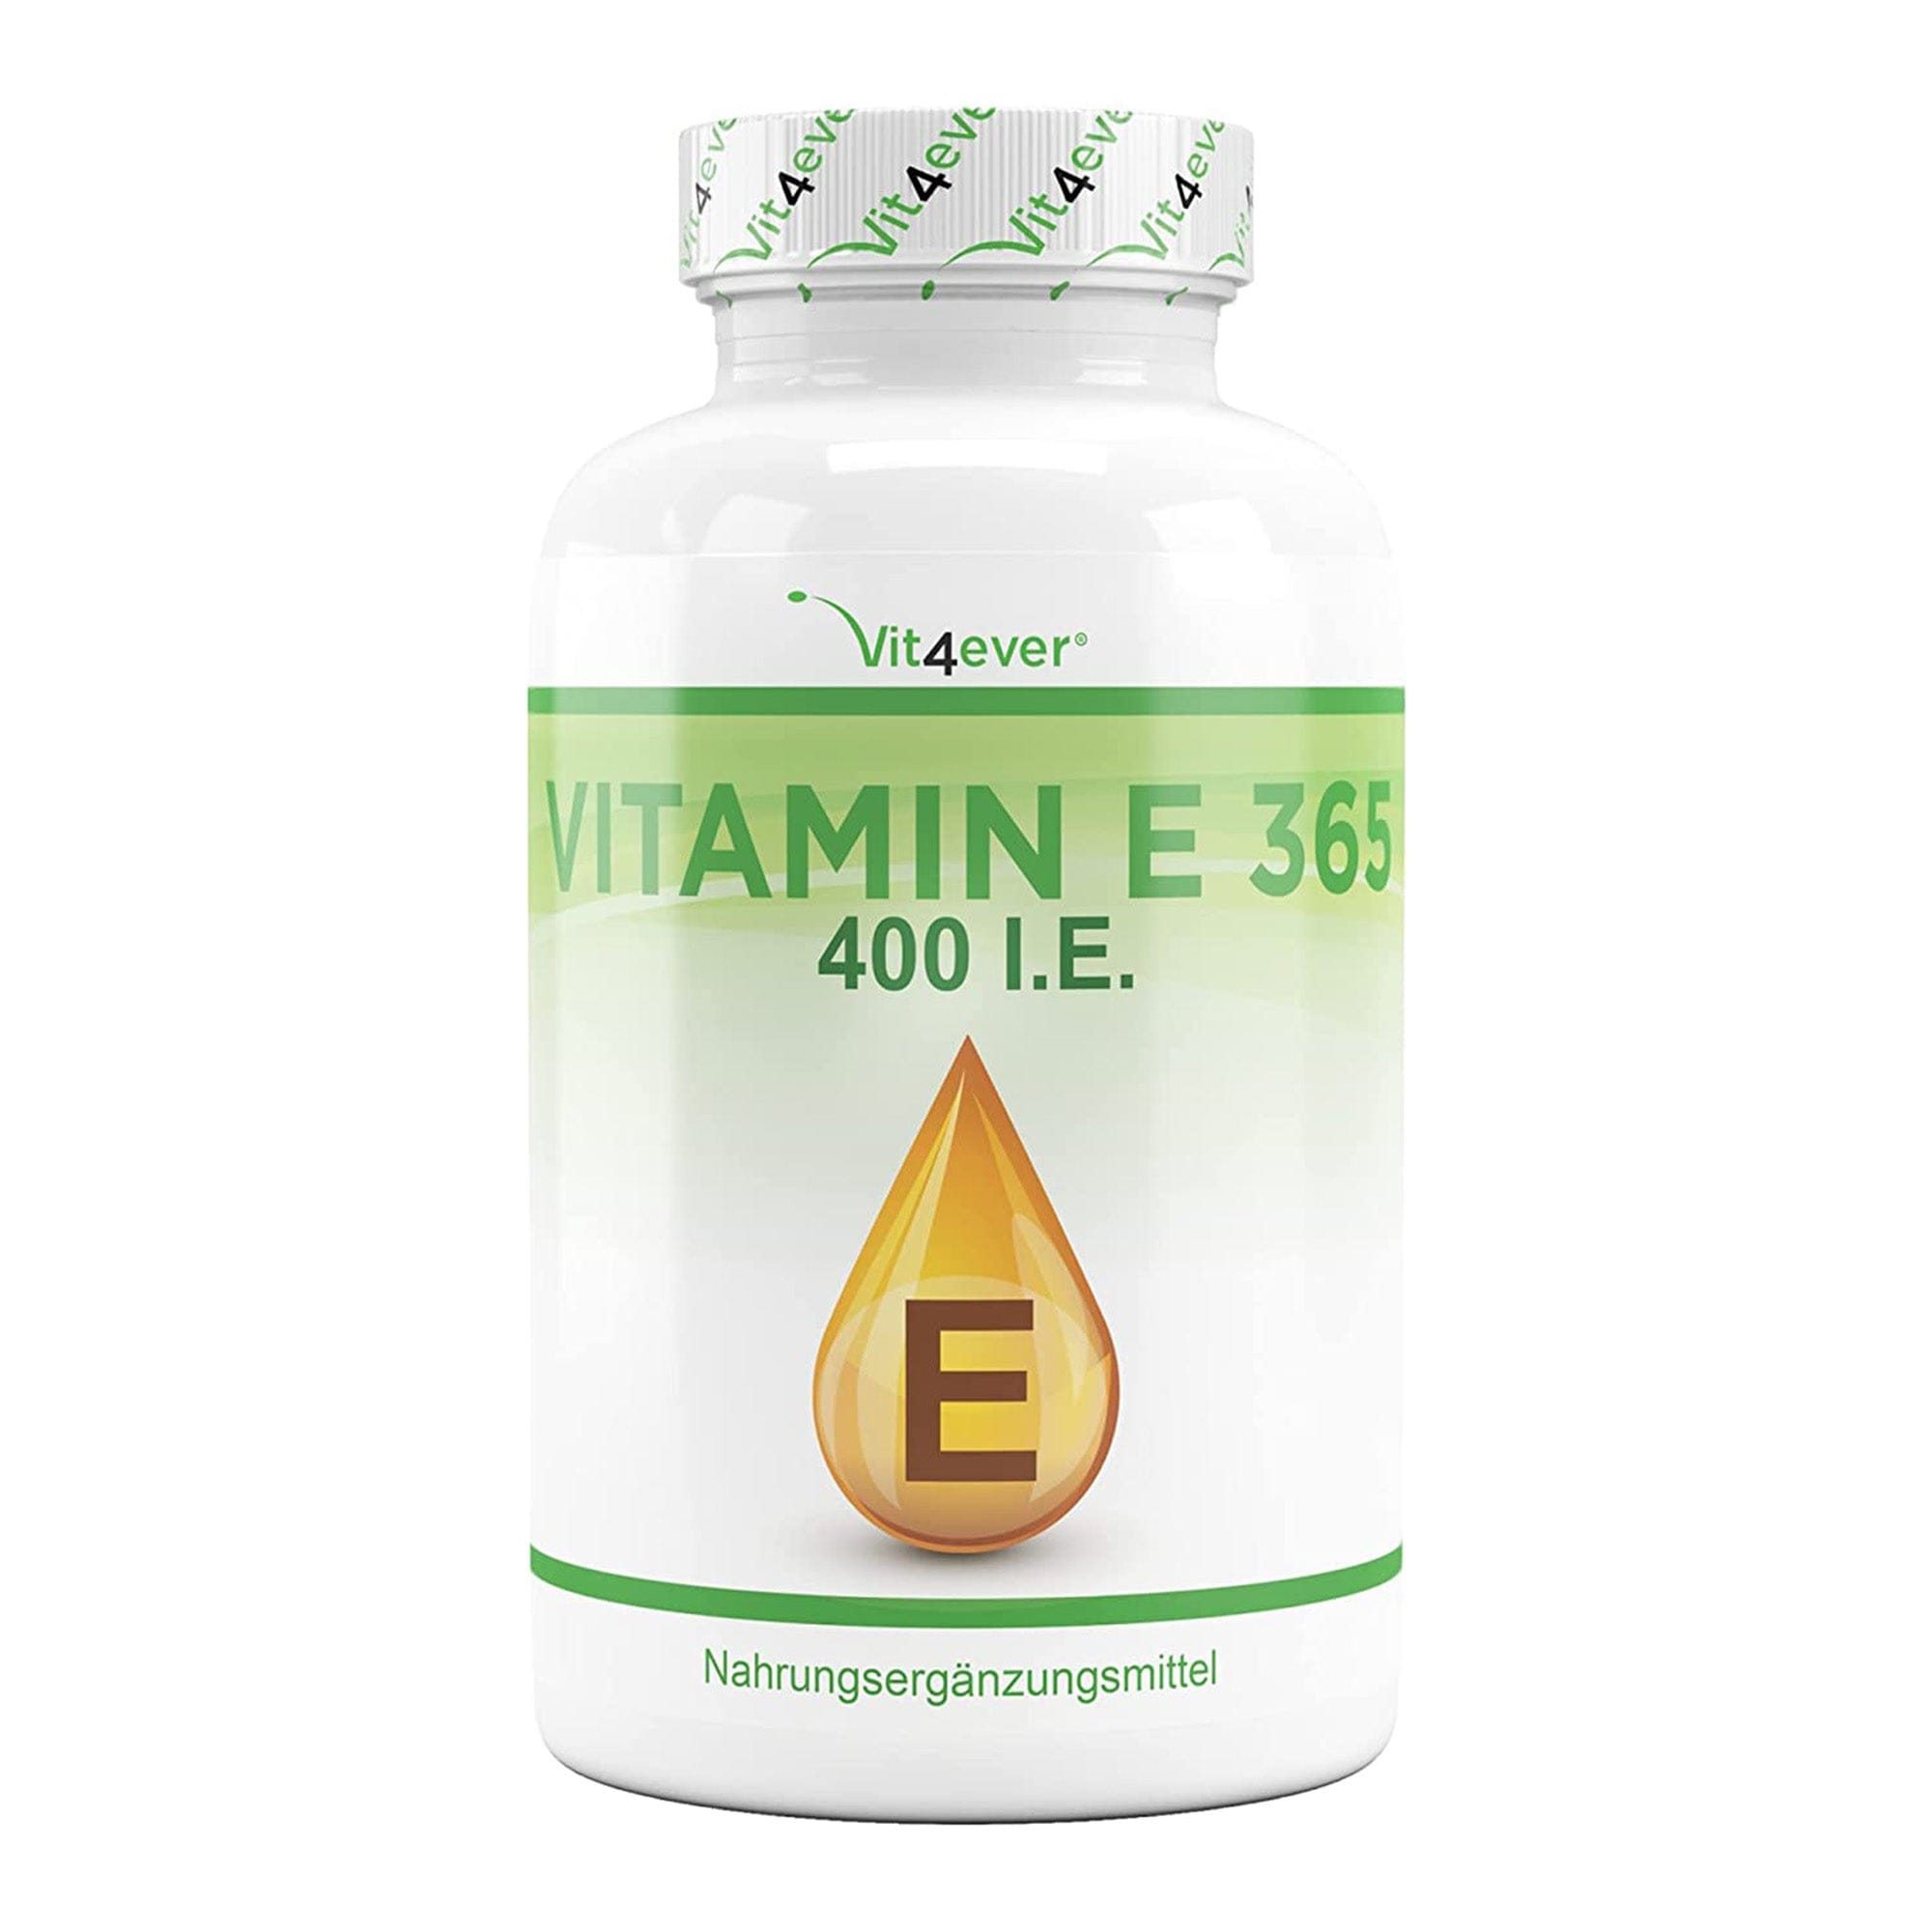 Vitamine E | D-Alpha-tocopherol | 400 I.E. | 365 Softgels | Vit4ever